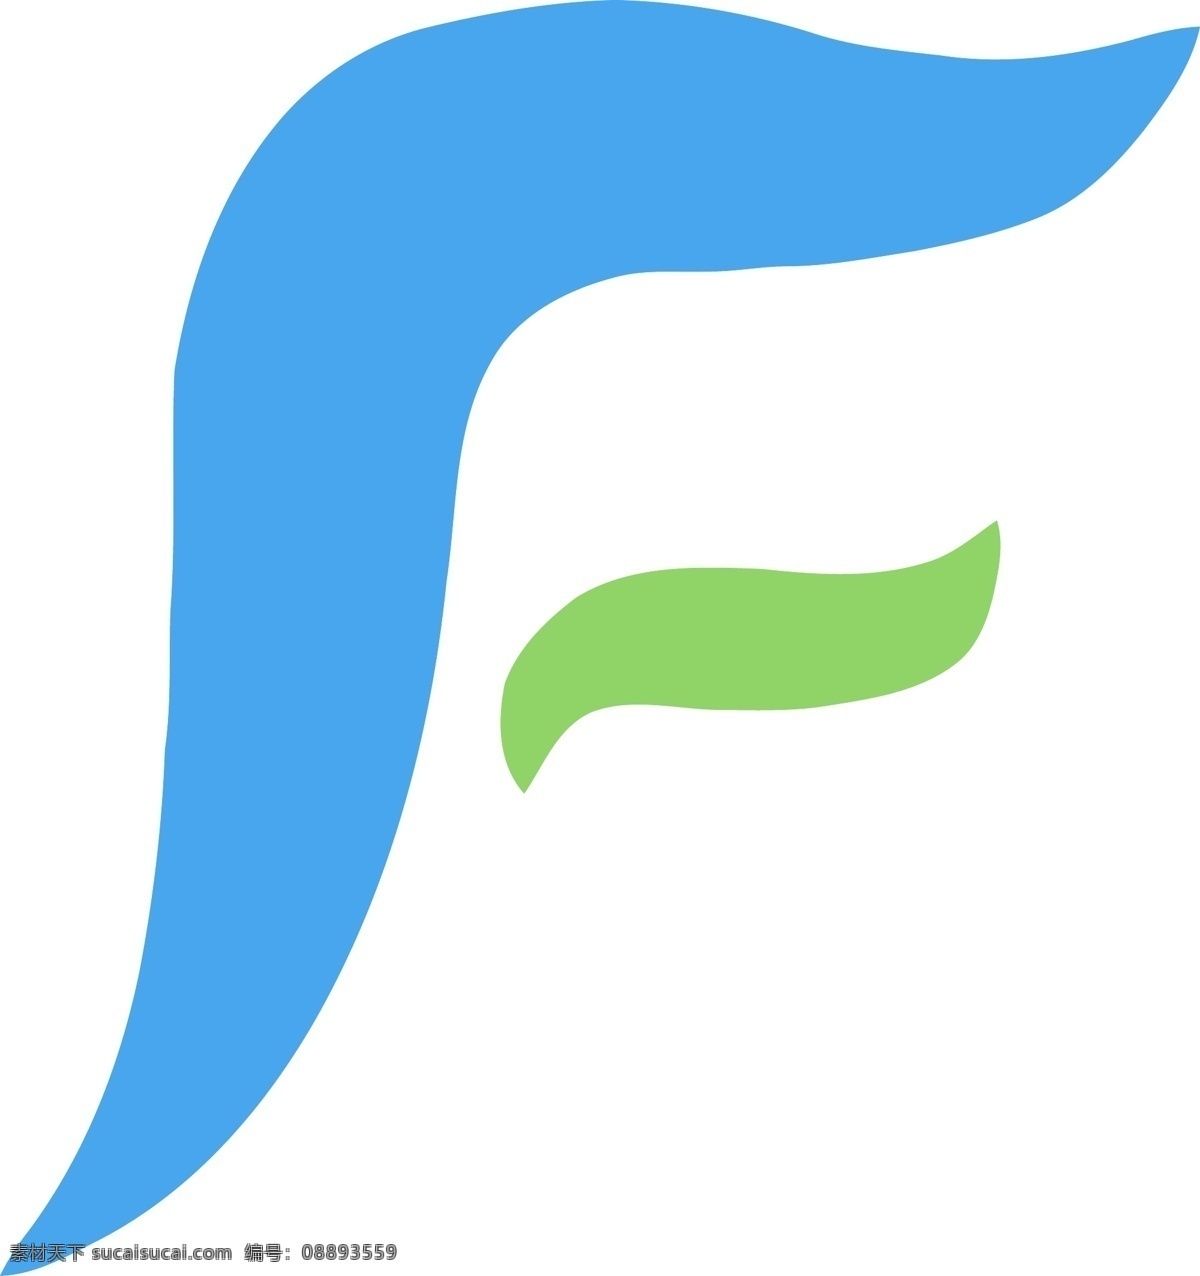 户外运动 高端 设备 品牌 logo 原创 飞翔 f字母 fly 矢量格式 流动 蓝绿搭配